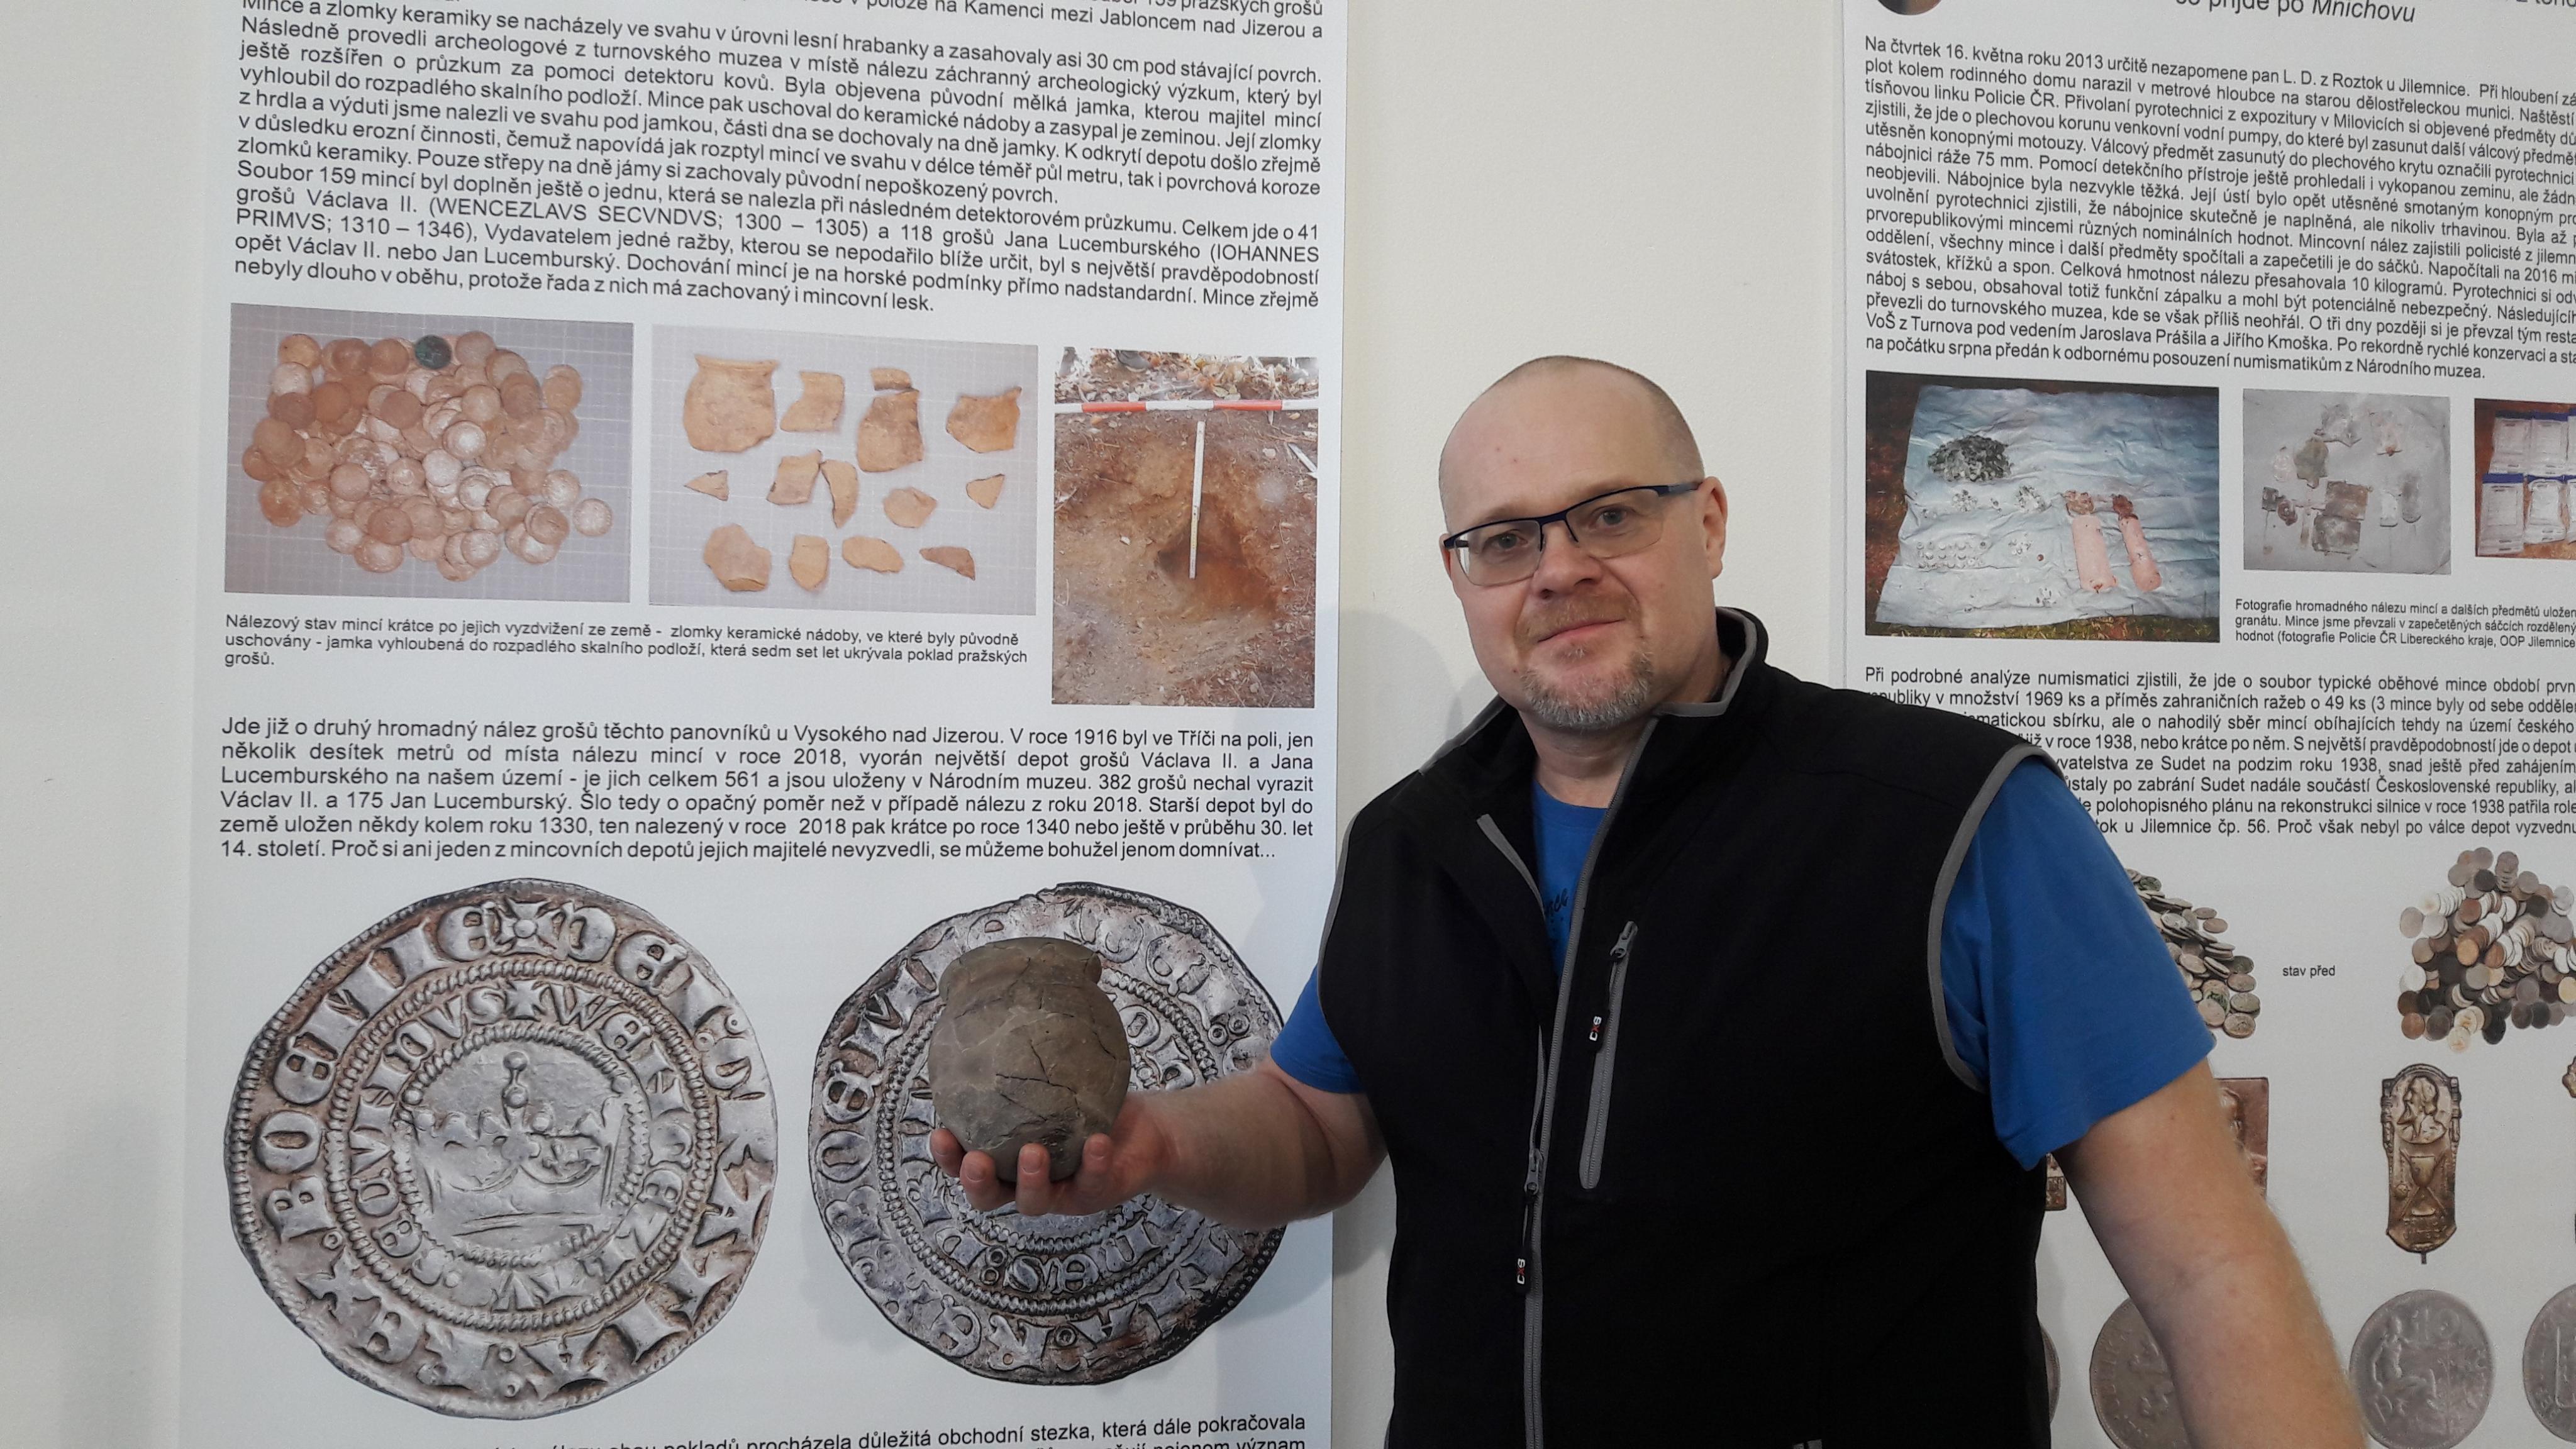 Archeolog Jak Prostředník zve do turnovského muzea na unikátní výstavu